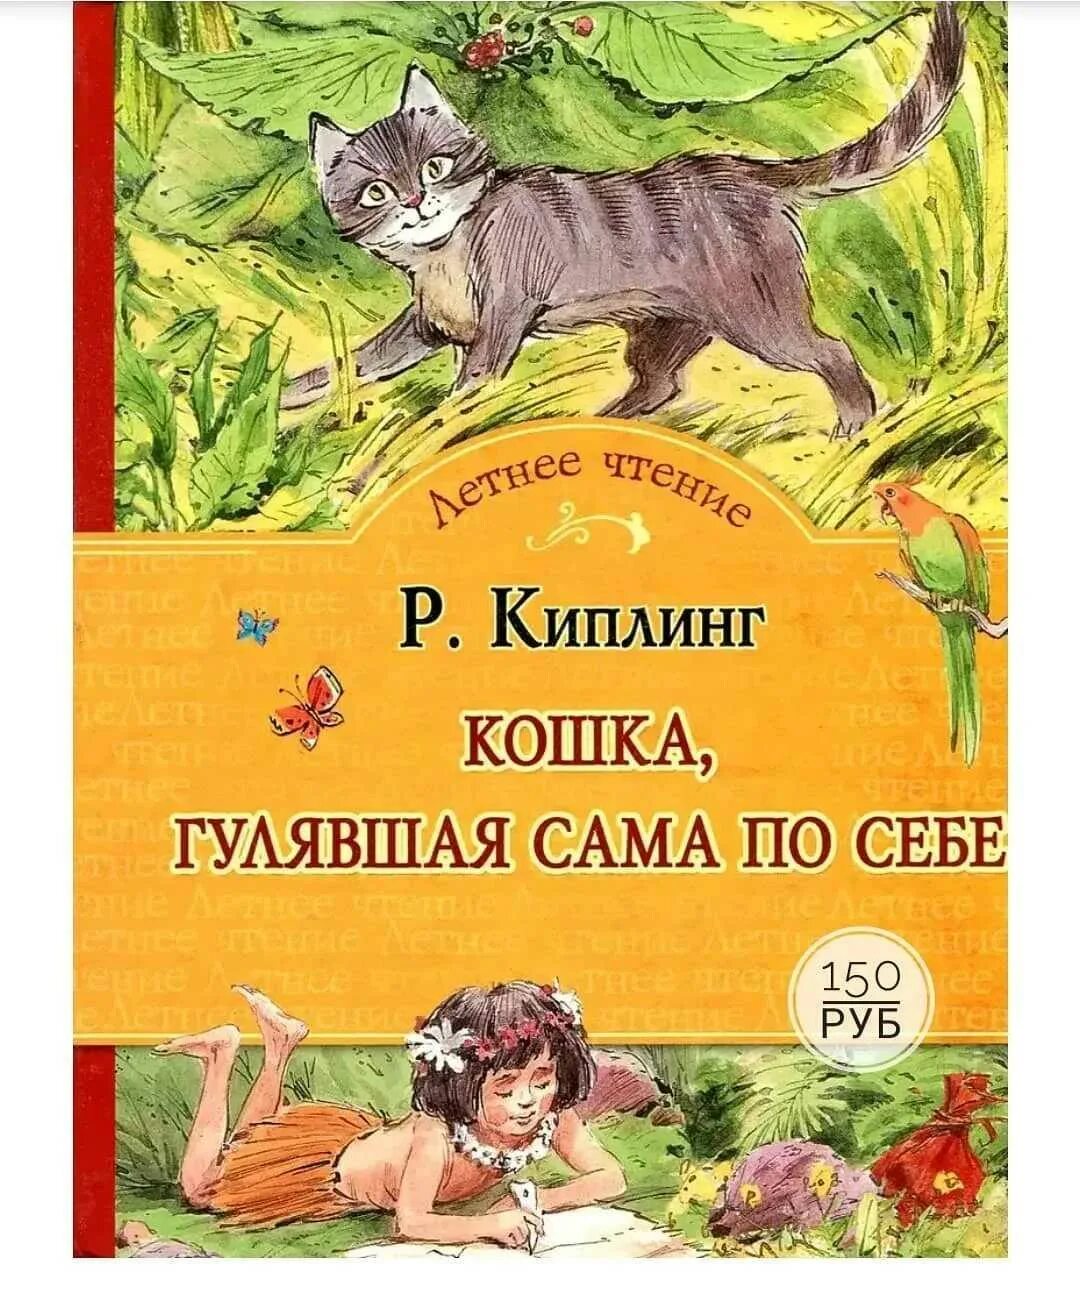 Кот герой произведений. Книги про кошек для детей. Киплинг кошка которая гуляла сама по себе книга. Книги о котах и кошках для детей.